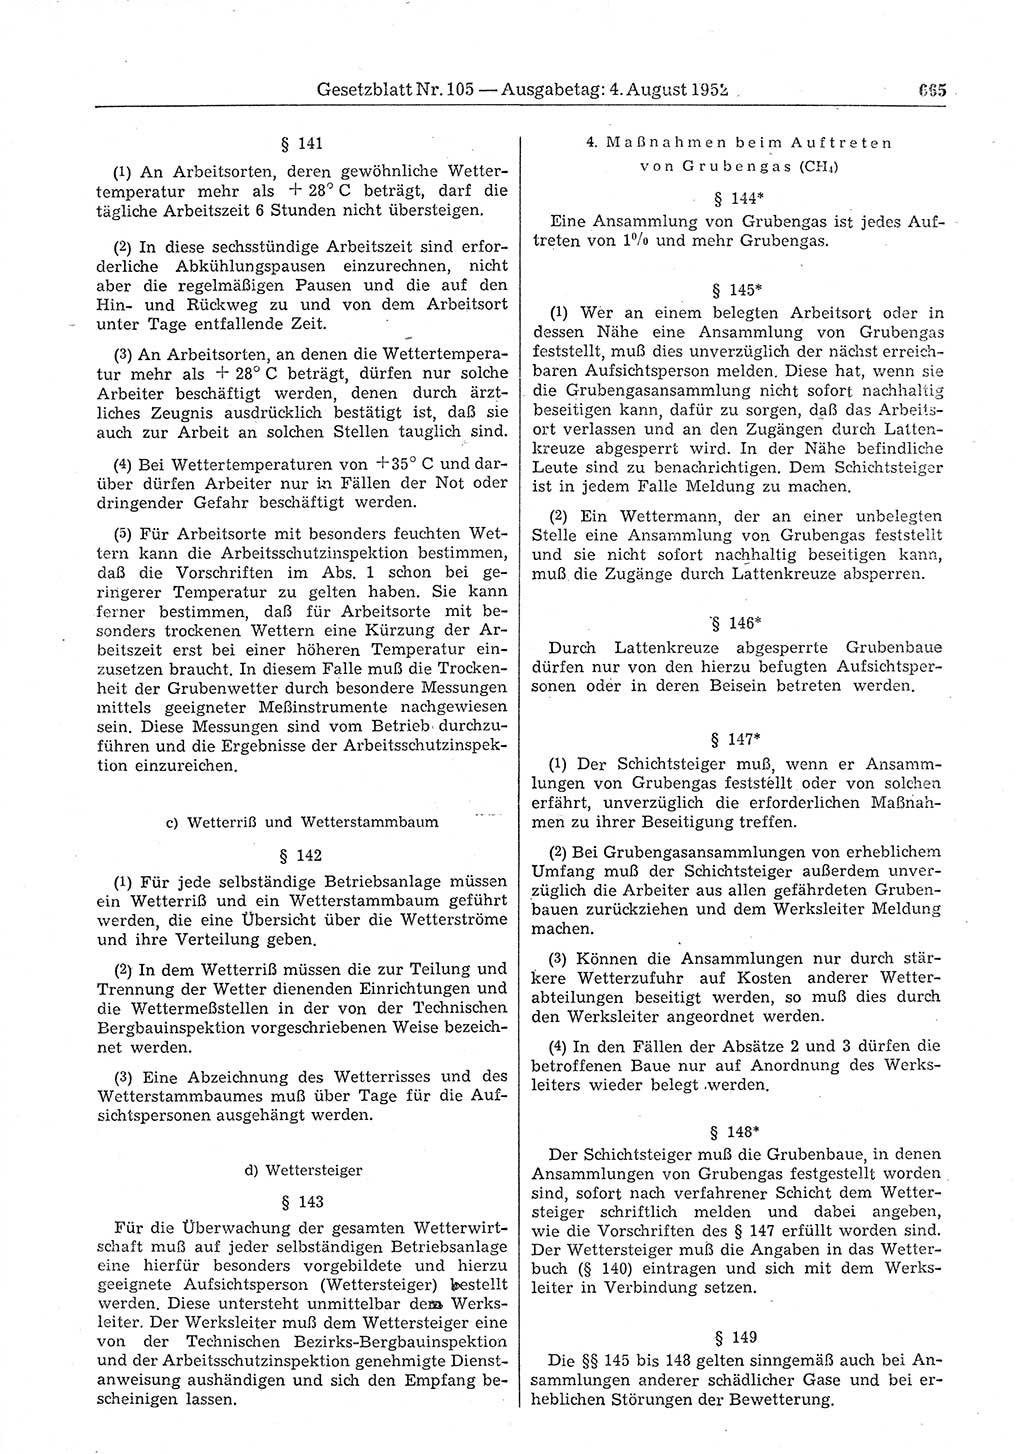 Gesetzblatt (GBl.) der Deutschen Demokratischen Republik (DDR) 1952, Seite 665 (GBl. DDR 1952, S. 665)